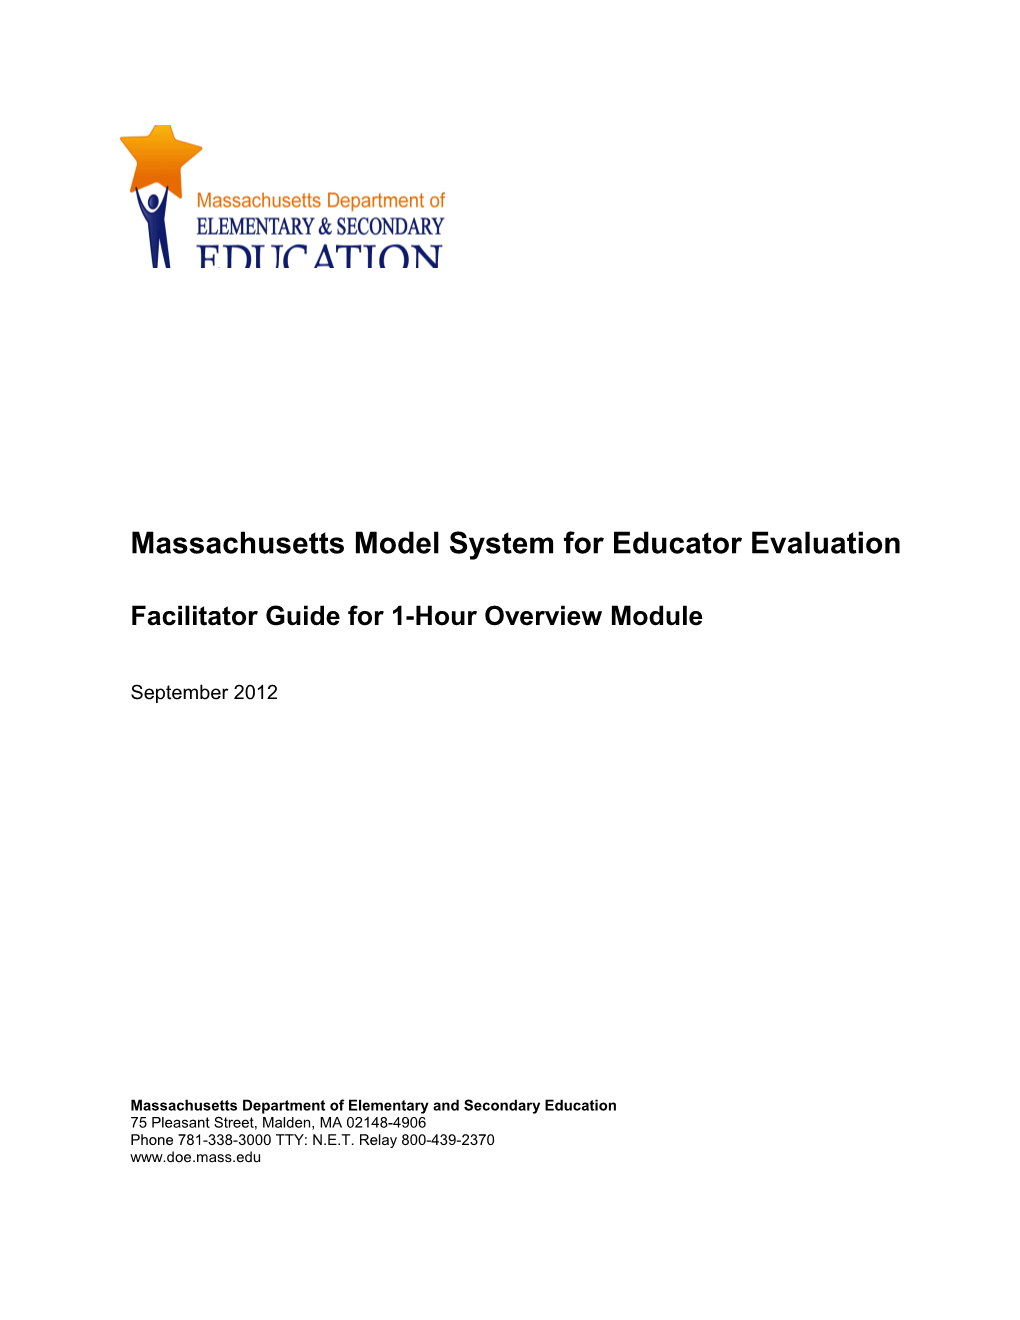 Massachusetts 1 Hour Overview Facilitator Guide: the Massachusetts Framework for Educator